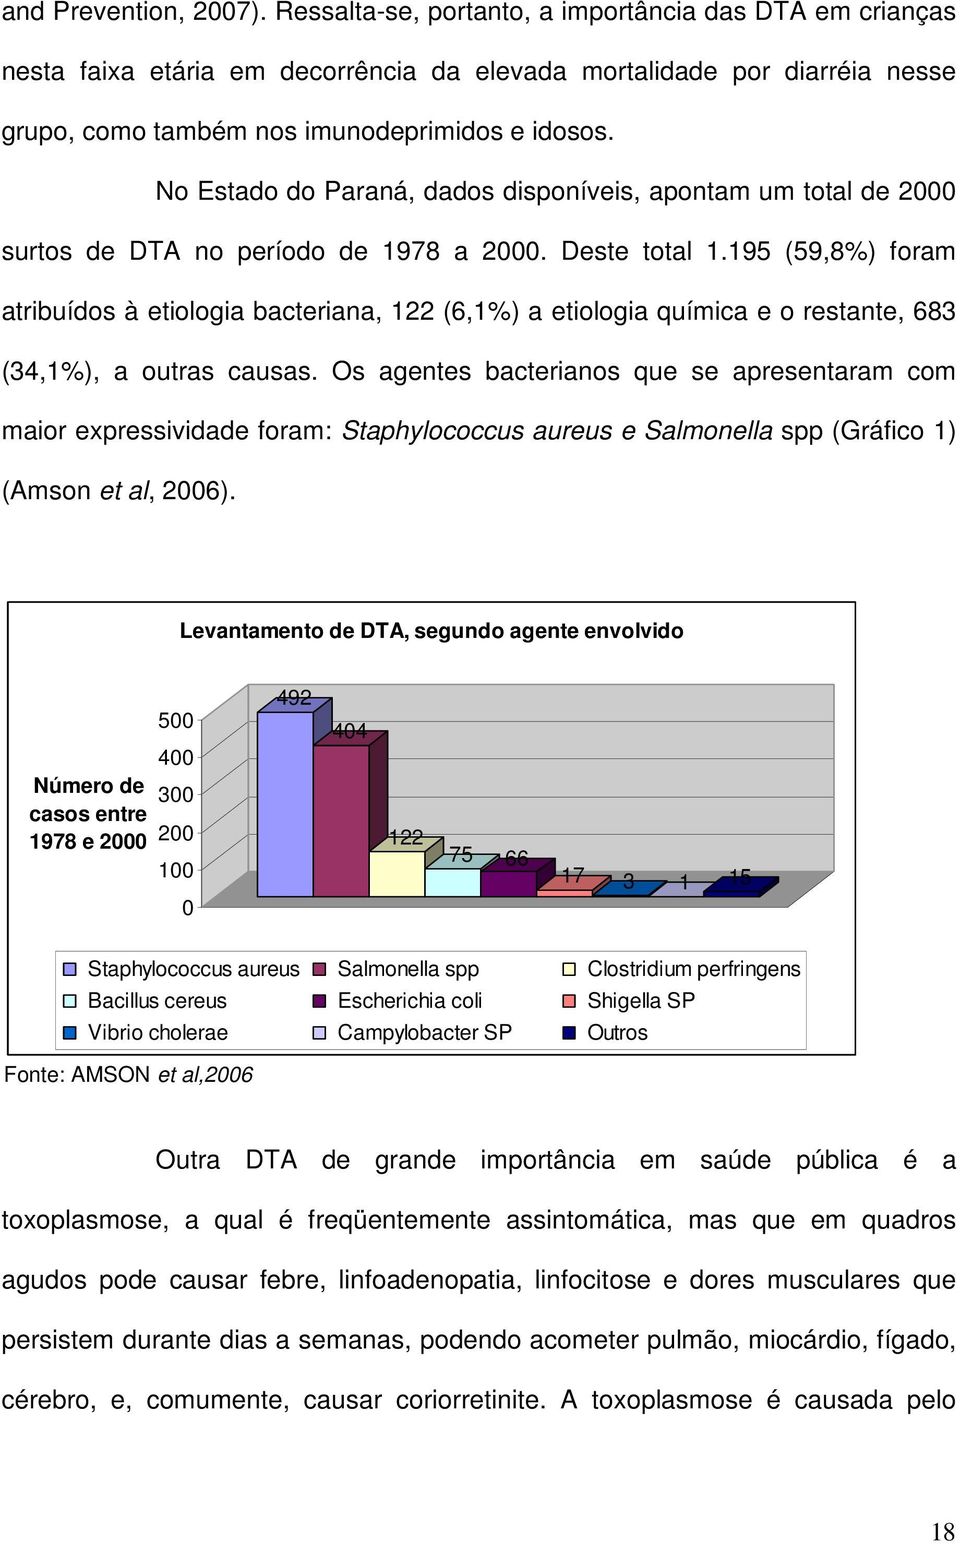 No Estado do Paraná, dados disponíveis, apontam um total de 2000 surtos de DTA no período de 1978 a 2000. Deste total 1.